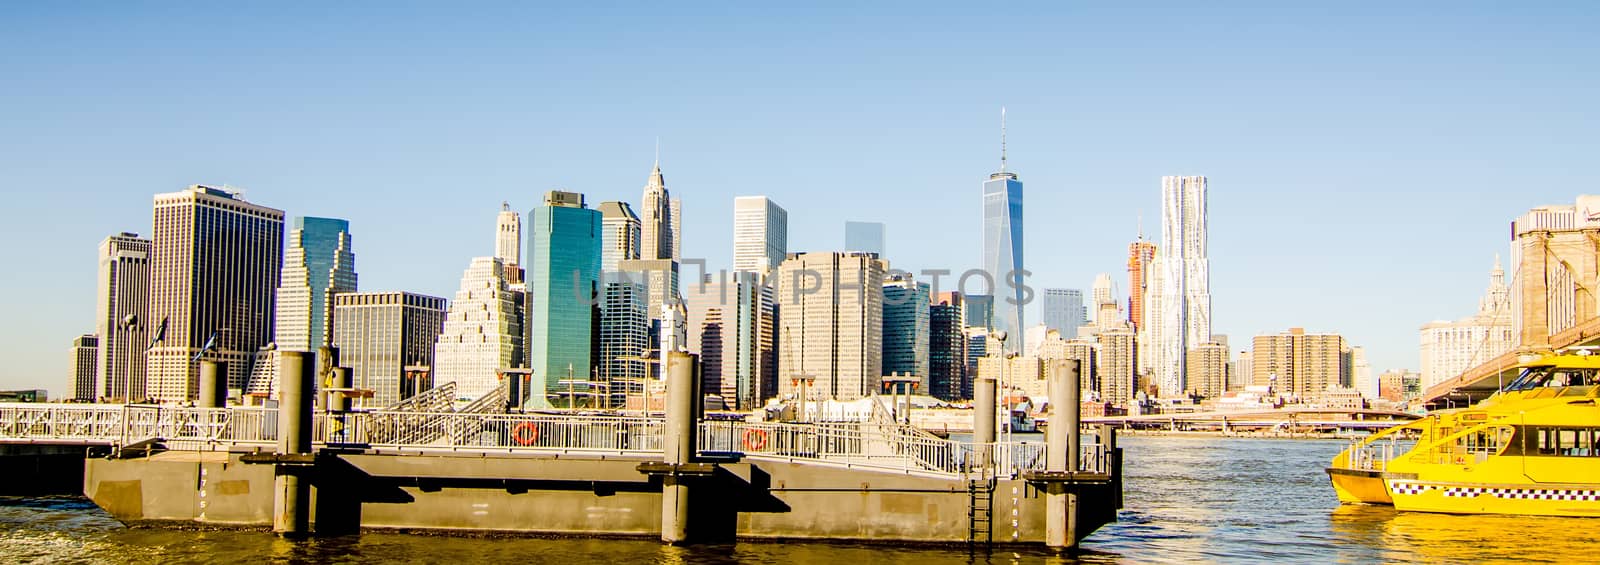 new york city skyline and surroundings